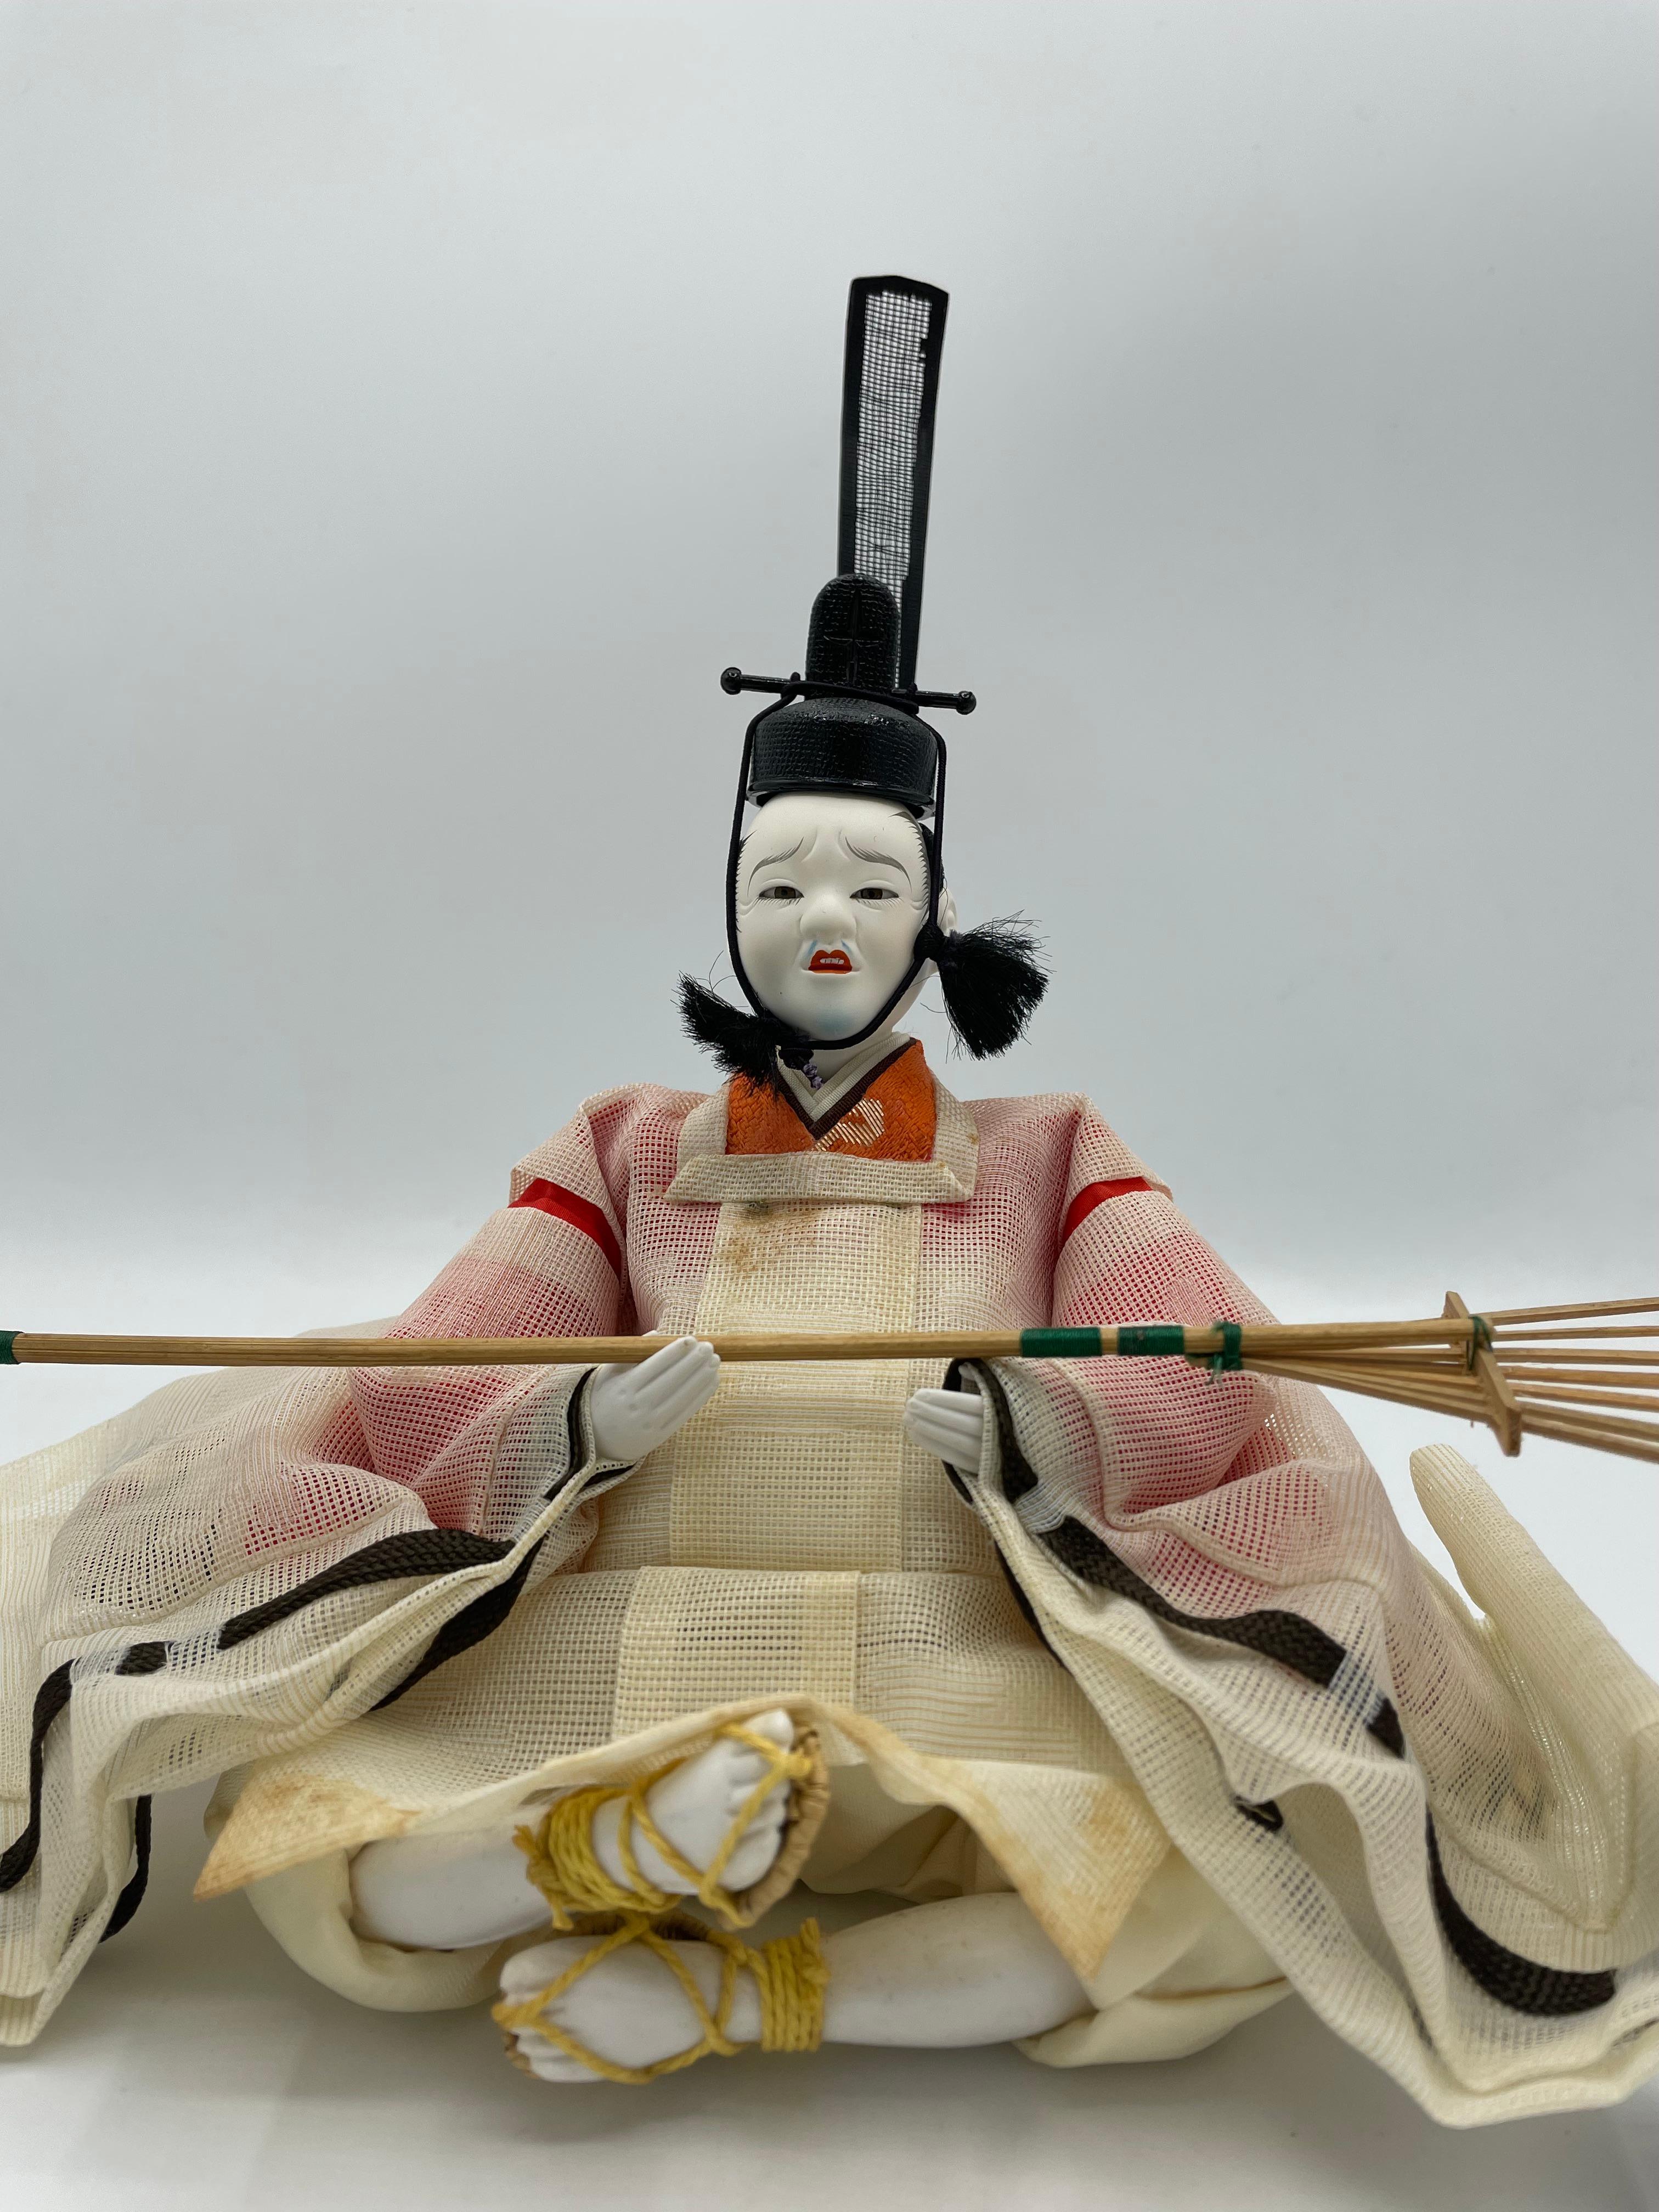 Dies ist eine Puppe, die wir für den Hinamatsuri-Tag verwenden. Diese Person ist eine von Shicho.
Diese Person hat eine Harke. Er wird Shicho, Nakijyogo genannt. 
Diese Puppe wurde aus Plastik, Baumwolle, Bambus und Seide hergestellt. Diese Puppe